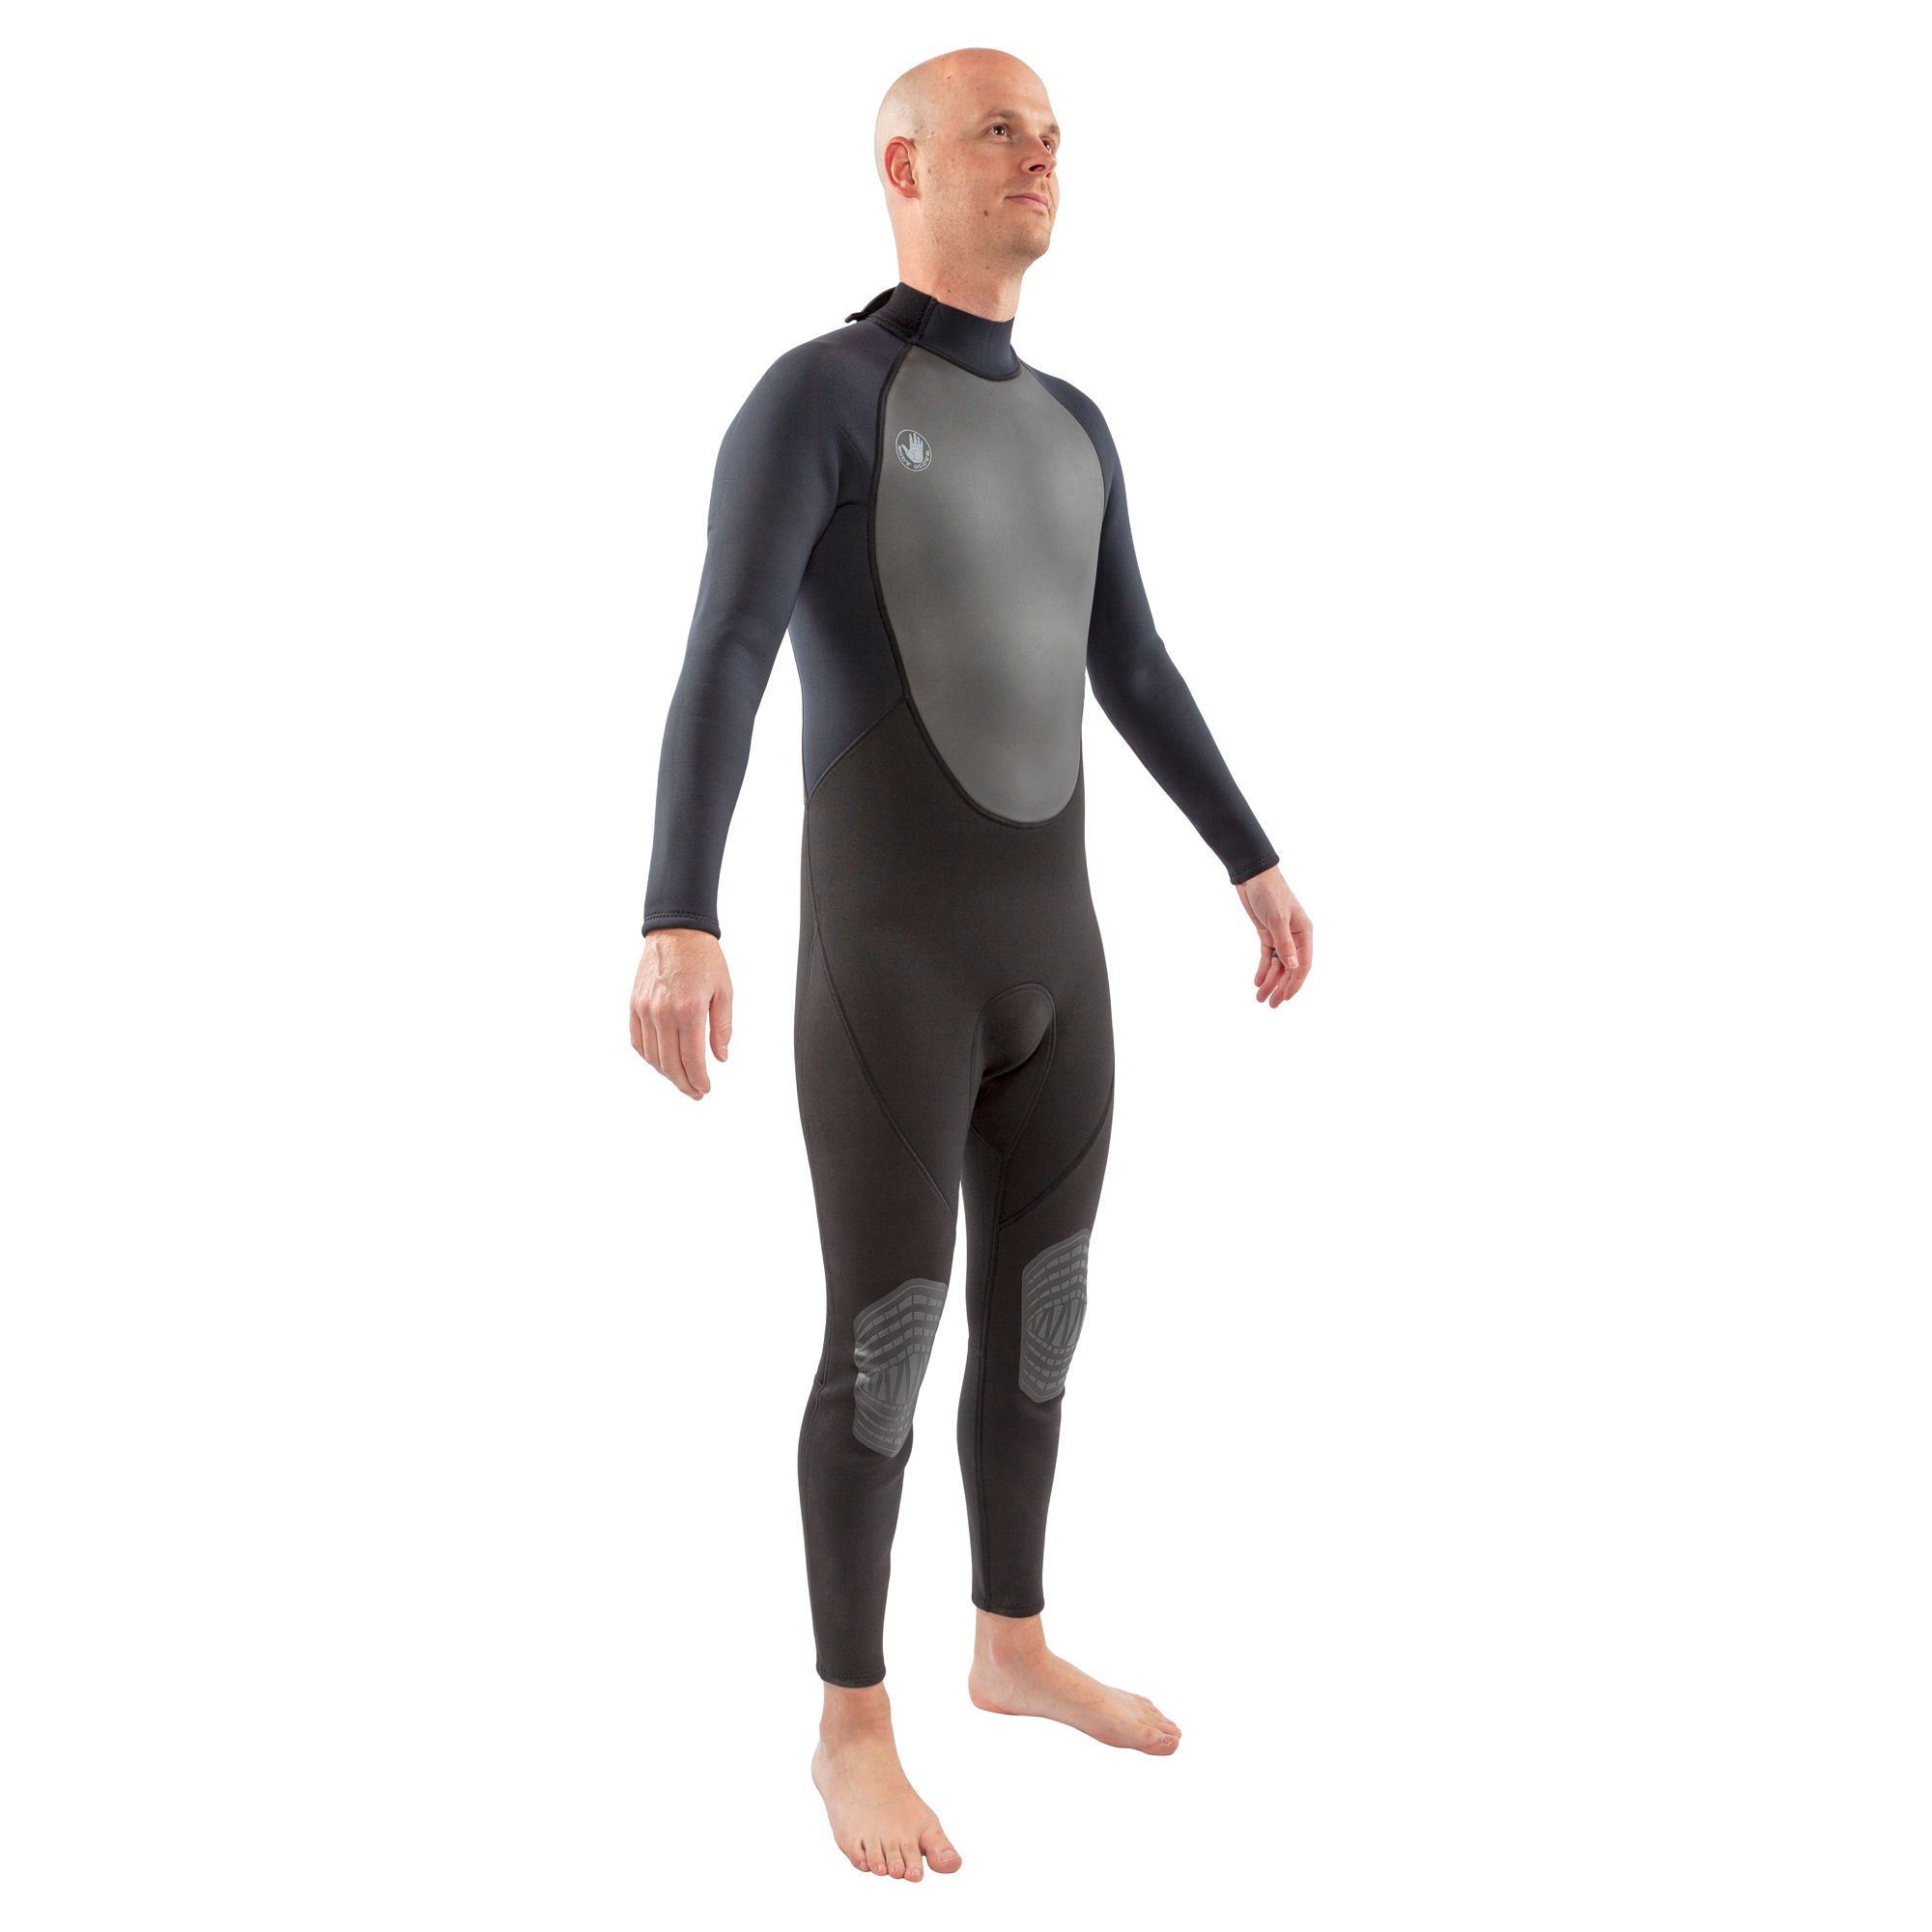 Body Glove Men's Pro 3 Back Zip Wetsuit